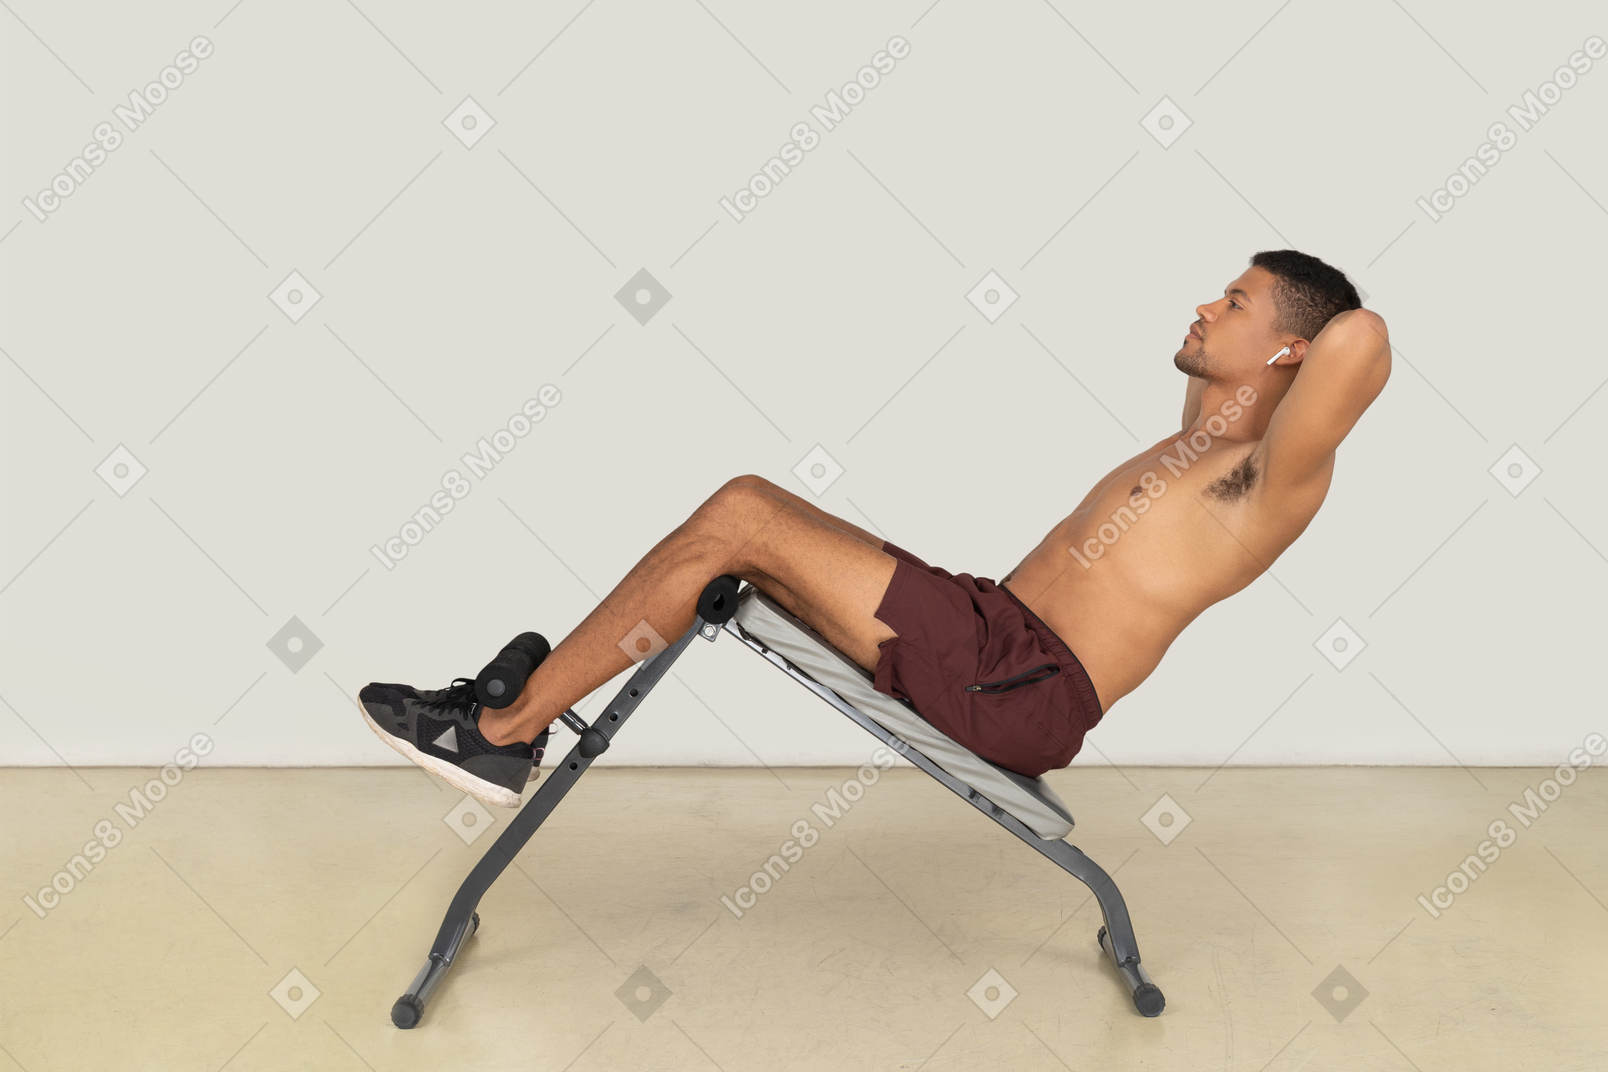 ベンチ腹筋運動をしている男性の側面図